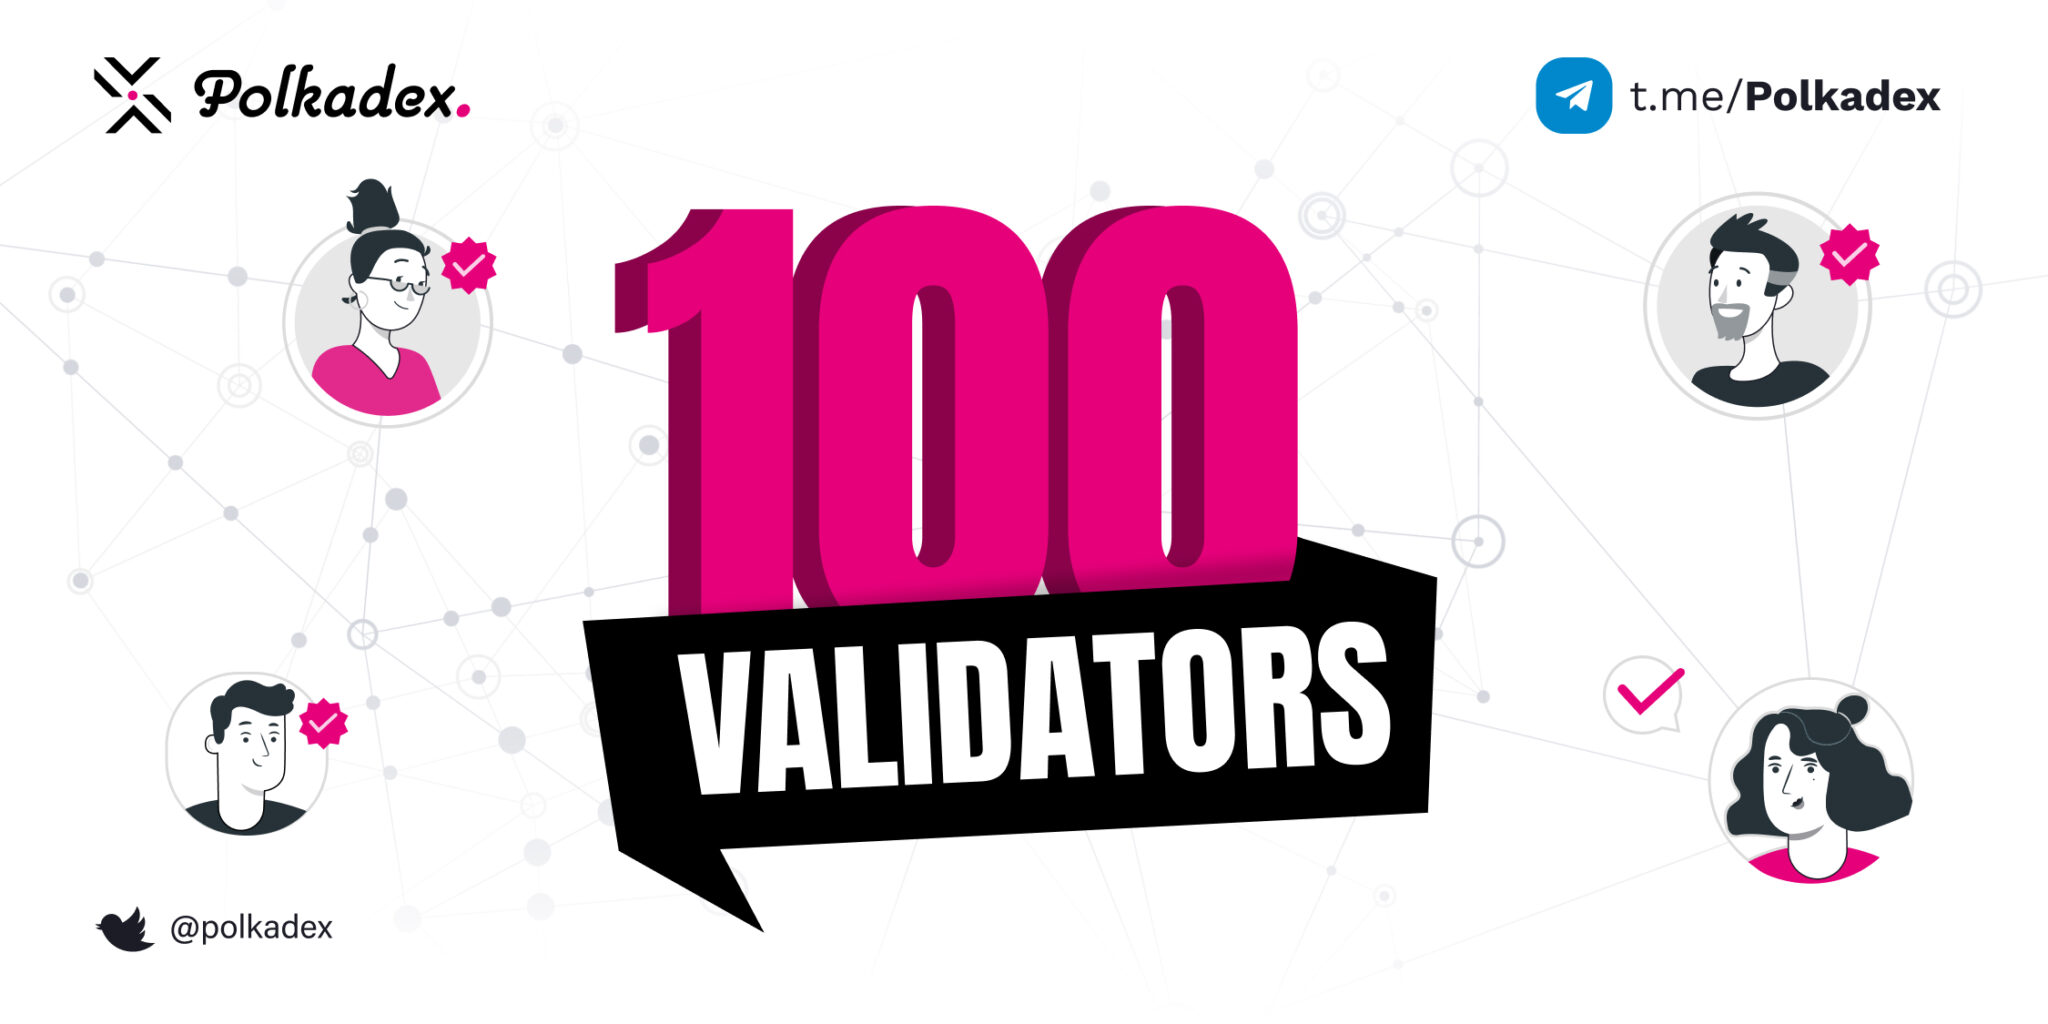 Polkadex 100 validators